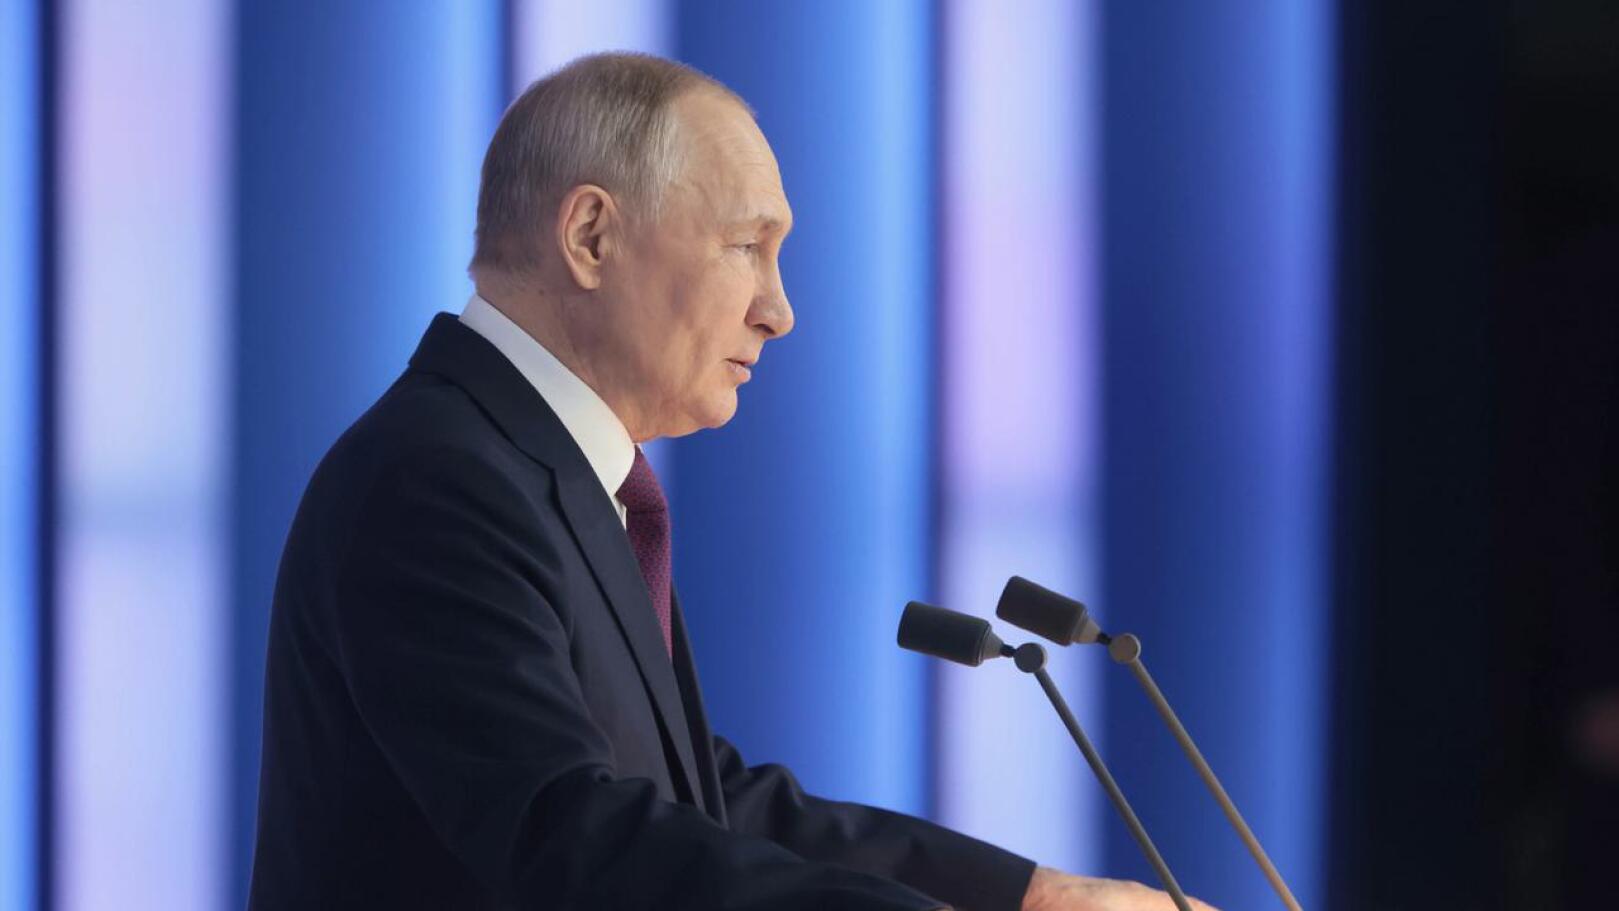 Venäjän presidentti Vladimir Putin pitämässä kansakunnan tilaa koskenutta puhettaan viime perjantaina.